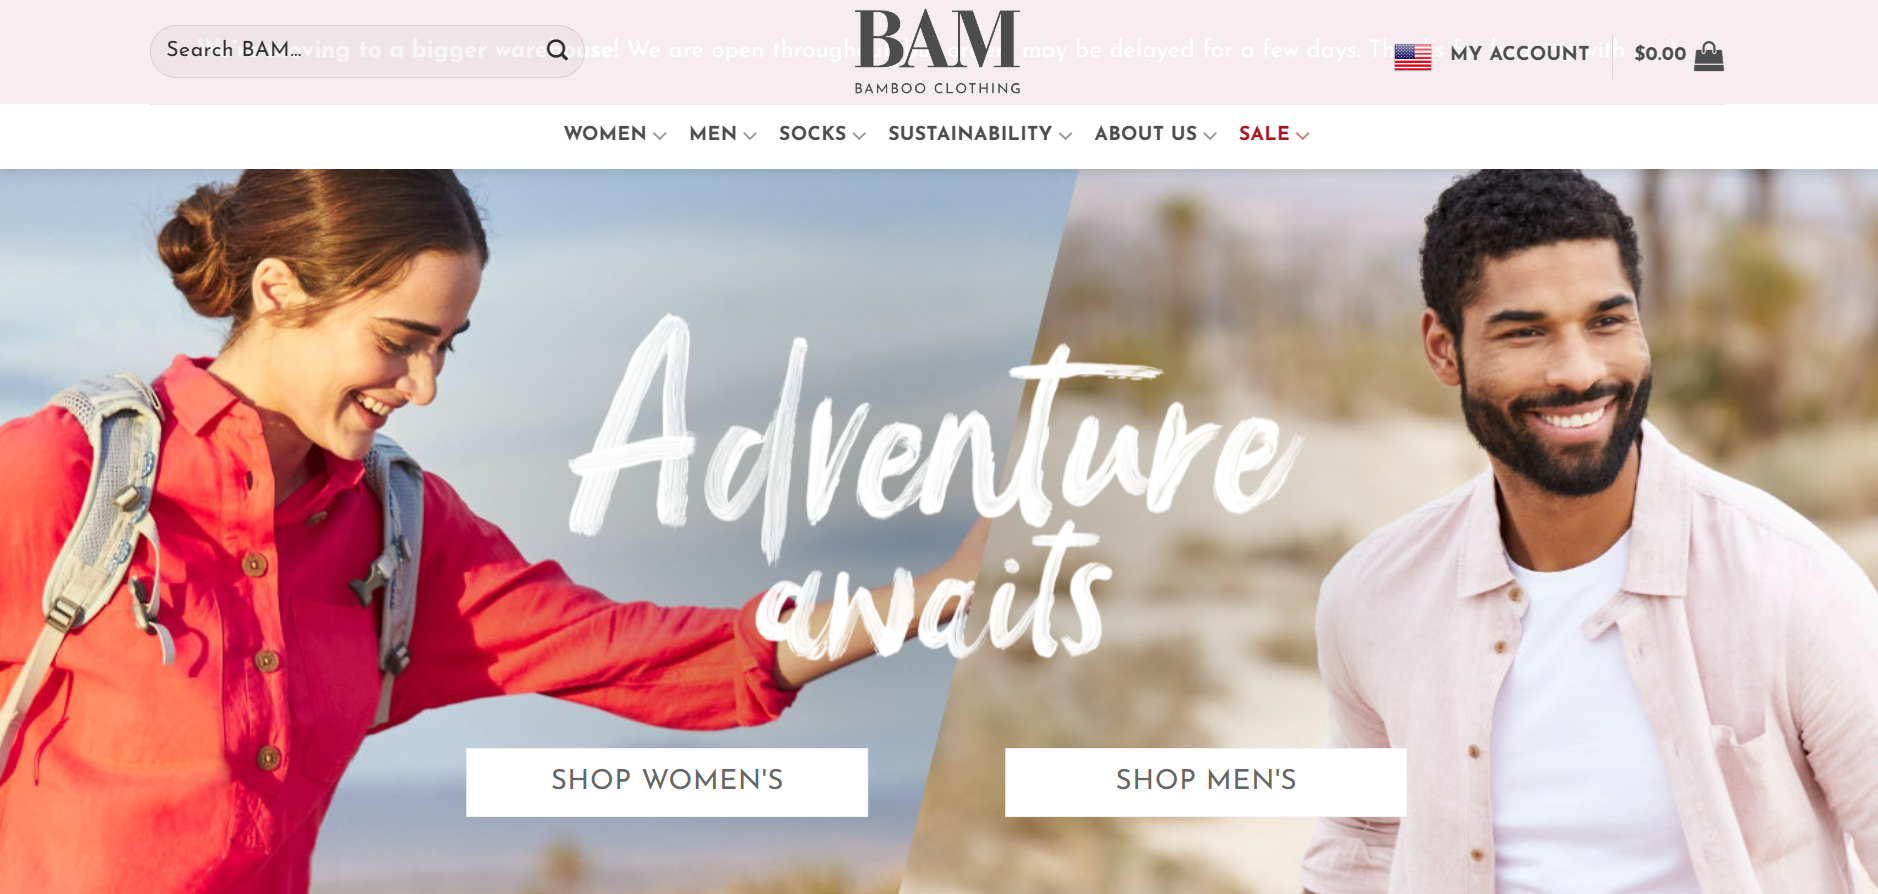 英国竹纤维时尚品牌 BAM 推出”激进透明“的供应链追溯服务